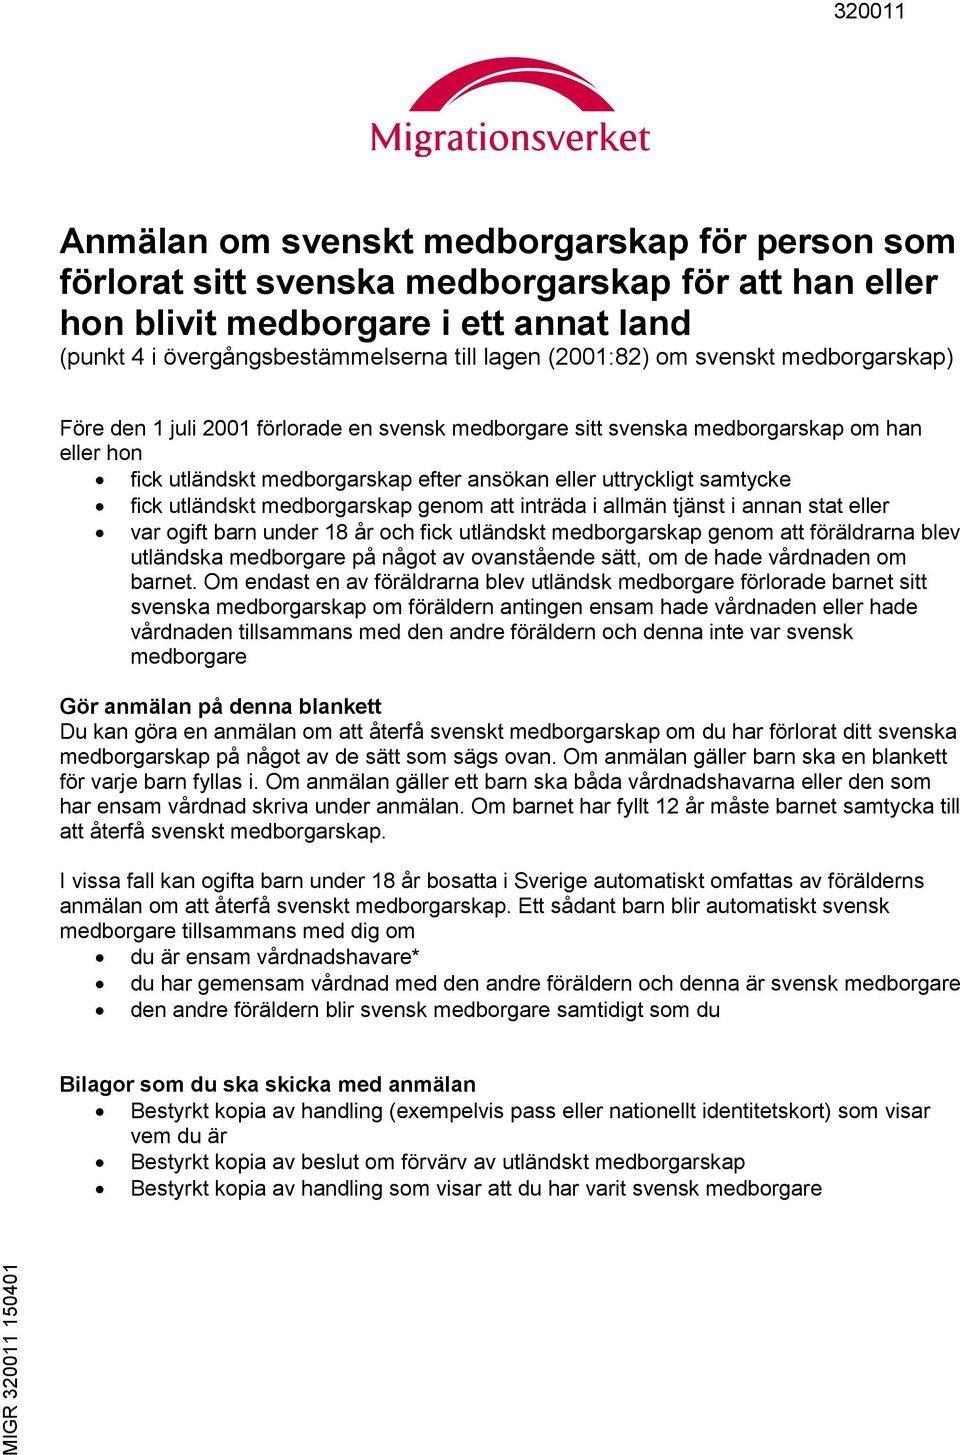 Anmälan om svenskt medborgarskap för person som förlorat sitt svenska  medborgarskap för att han eller hon blivit medborgare i ett annat land -  PDF Gratis nedladdning